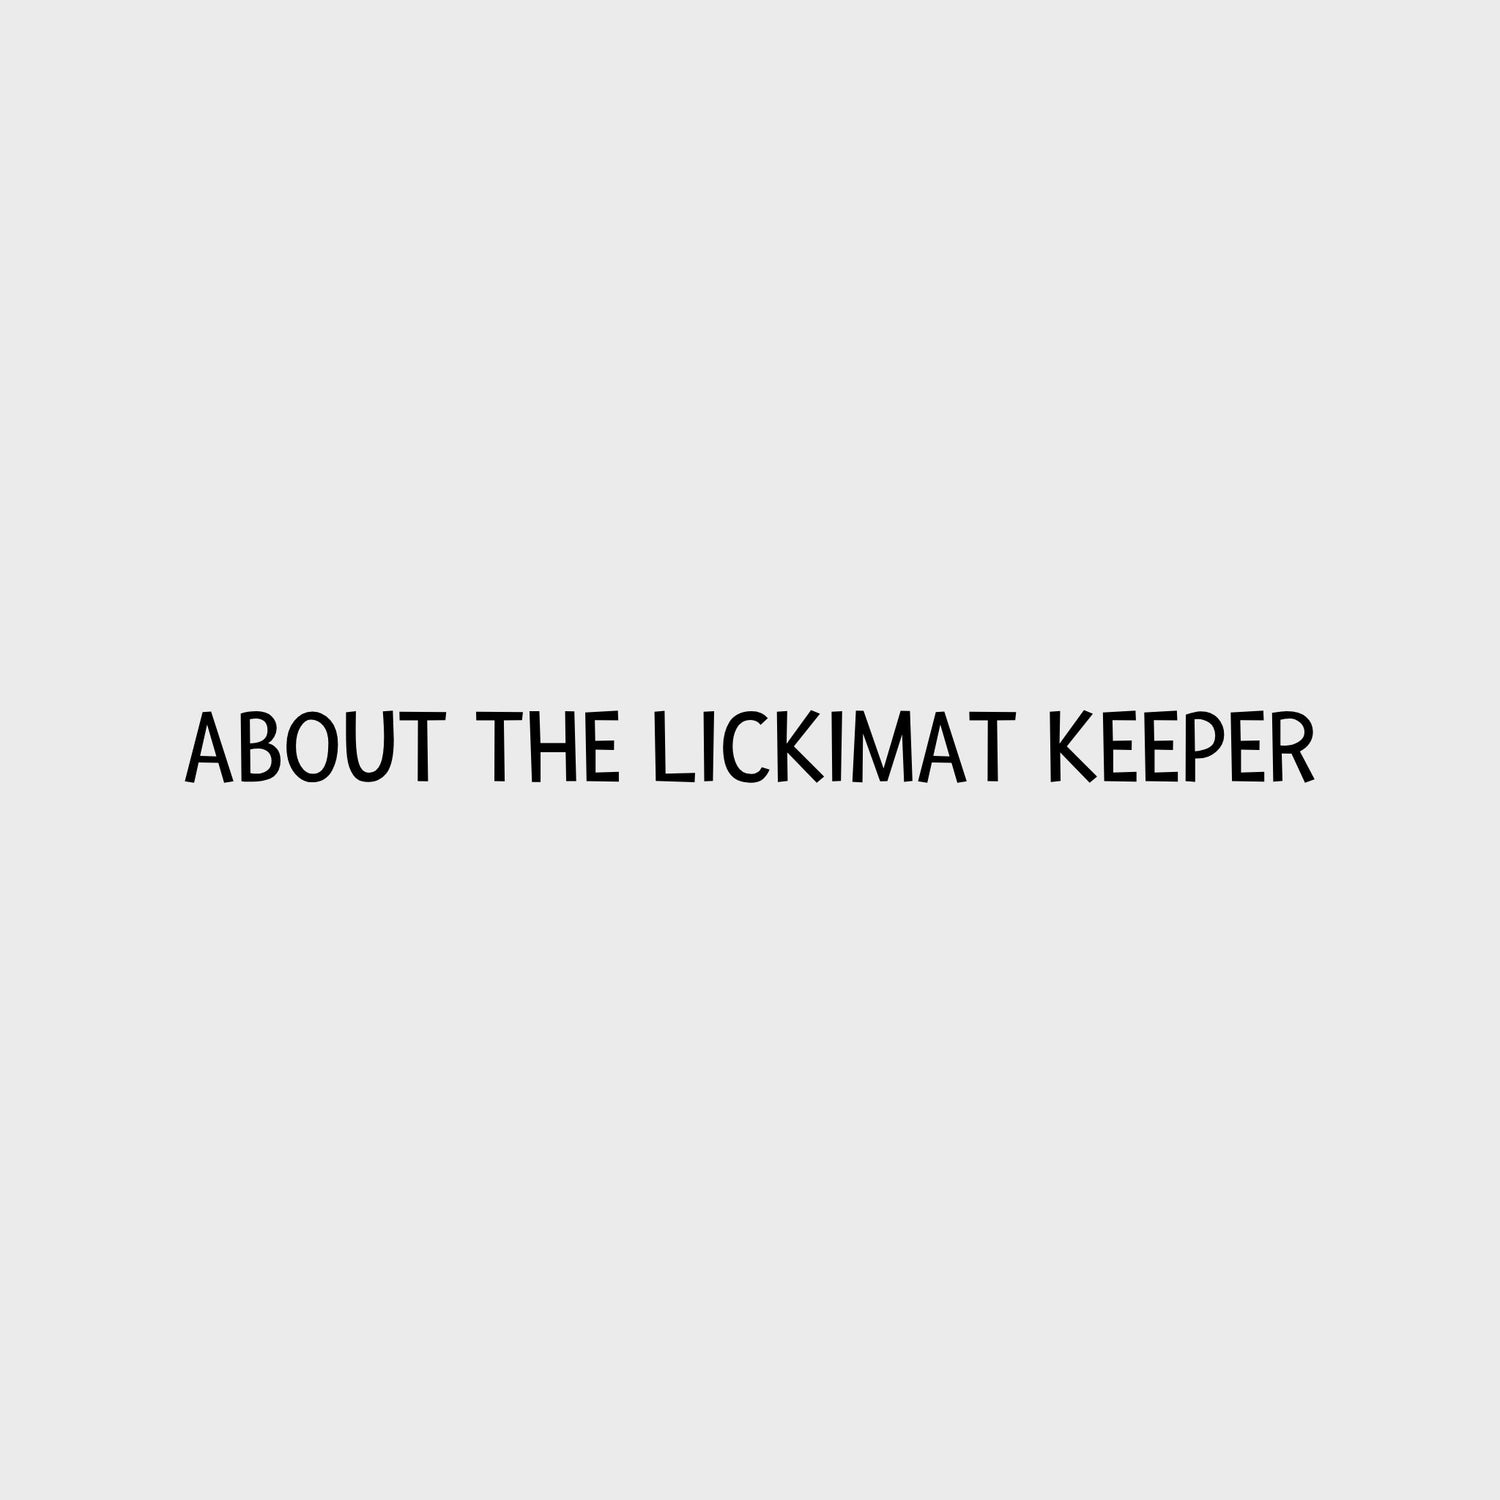 Video - LickiMat Keeper